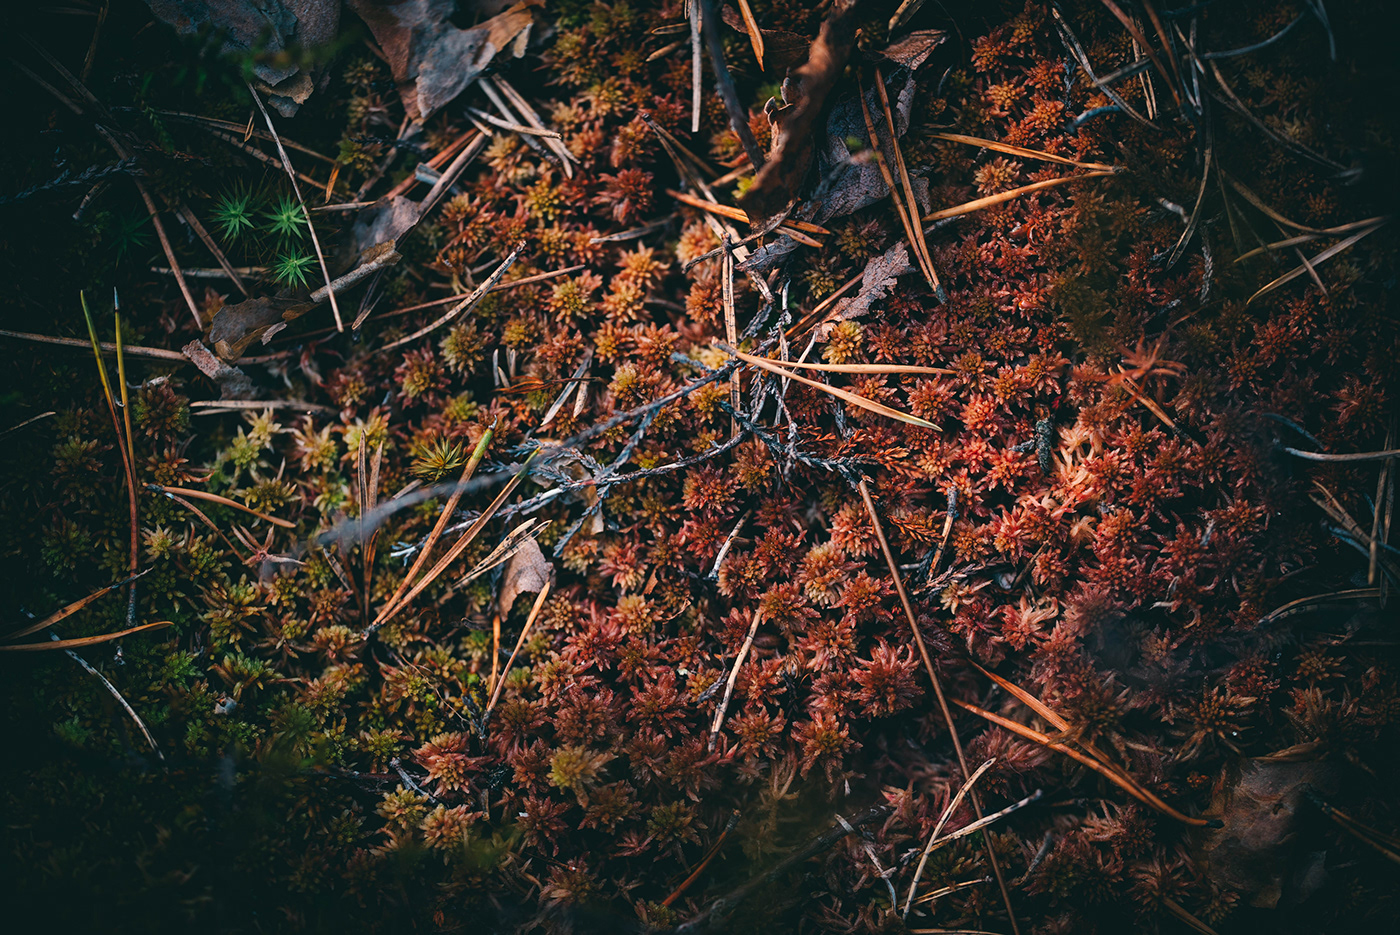 forest moss lichen macro Presetr finland summer wild rosemary